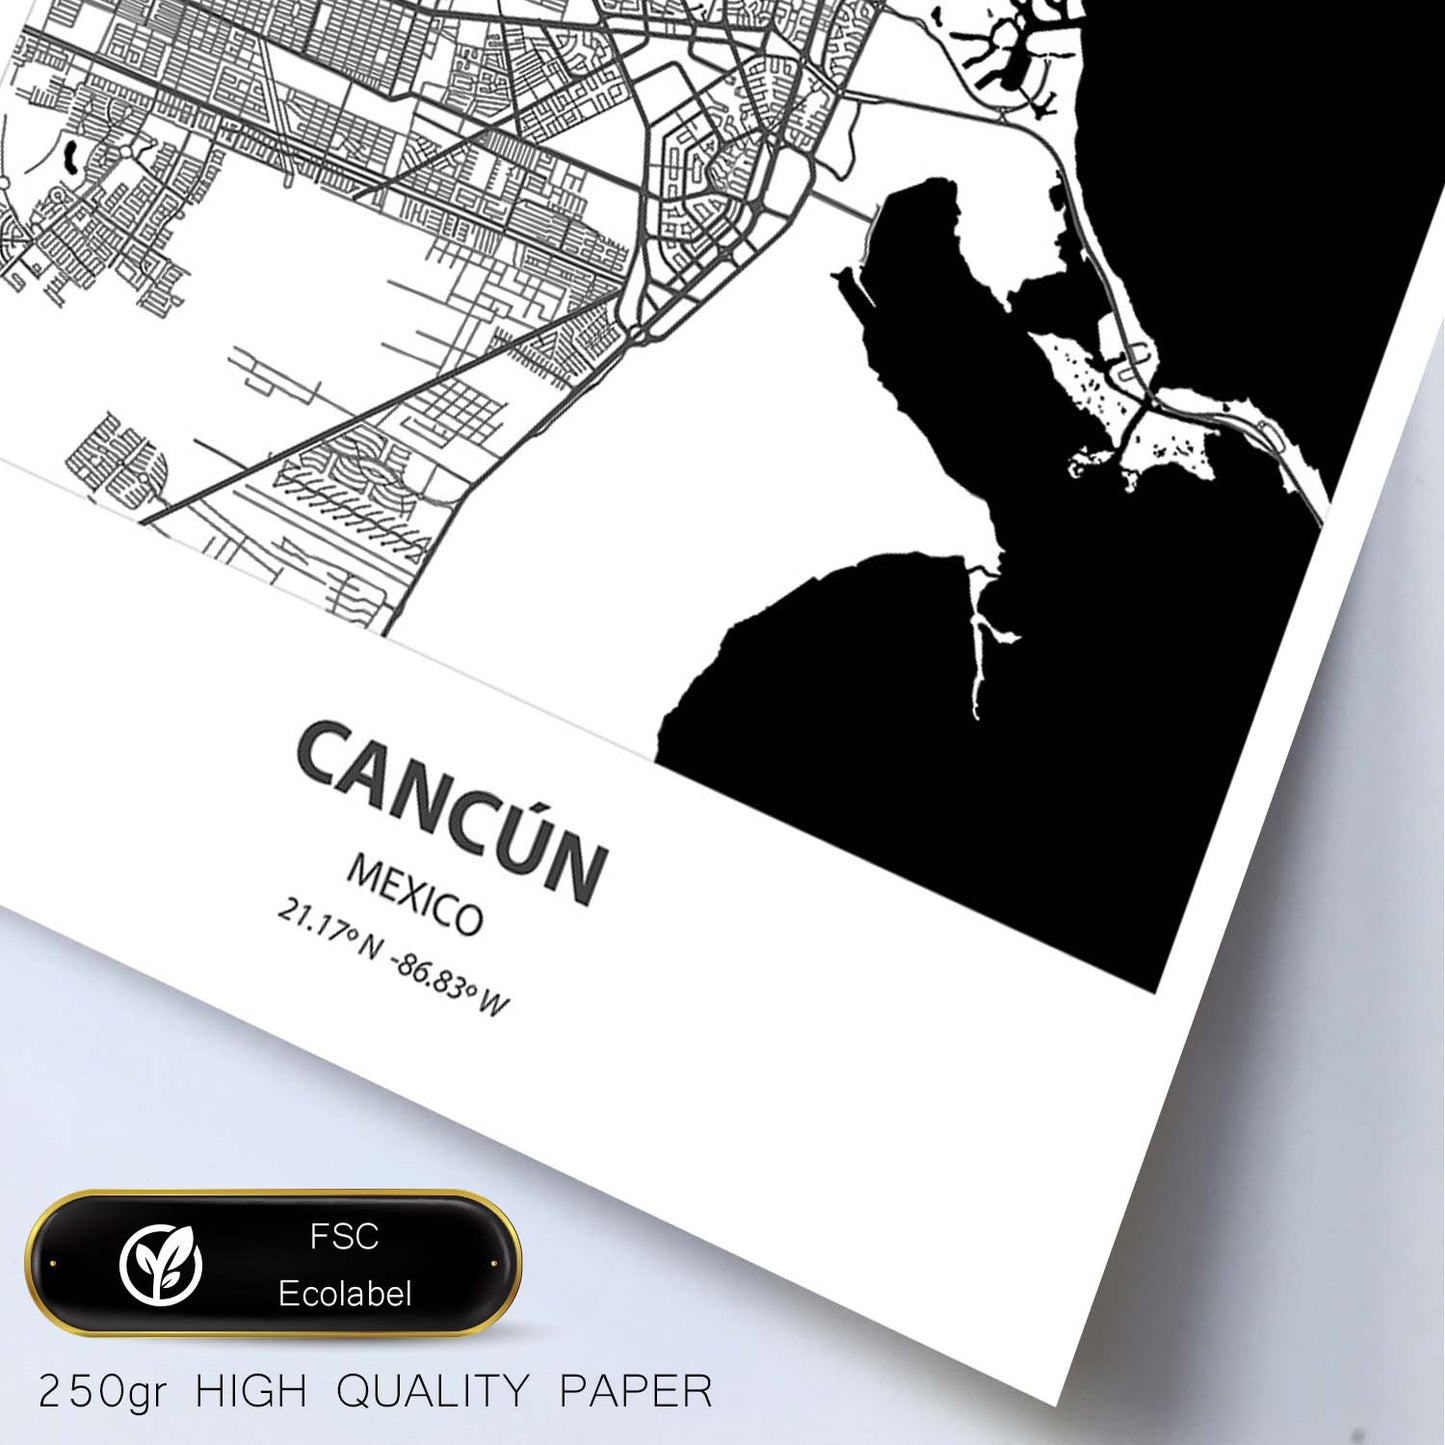 Poster con mapa de Cancun - Mexico. Láminas de ciudades de Latinoamérica con mares y ríos en color negro.-Artwork-Nacnic-Nacnic Estudio SL